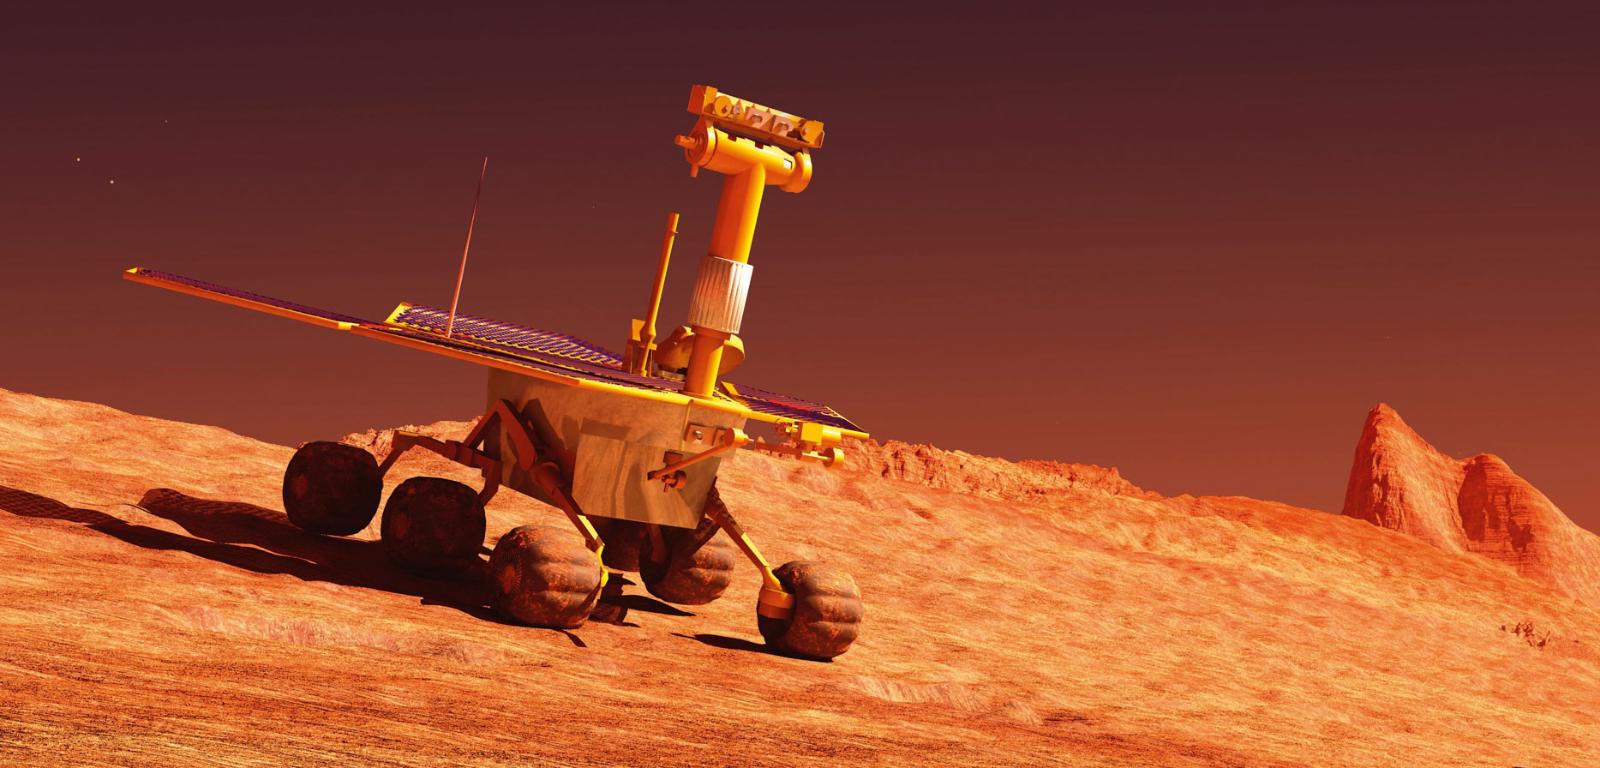 Jeżdżące łaziki już od lat przemierzają Marsa. Czy na dalekich globach zagoszczą niedługo roboty o niemal fantastycznych konstrukcjach i możliwościach?